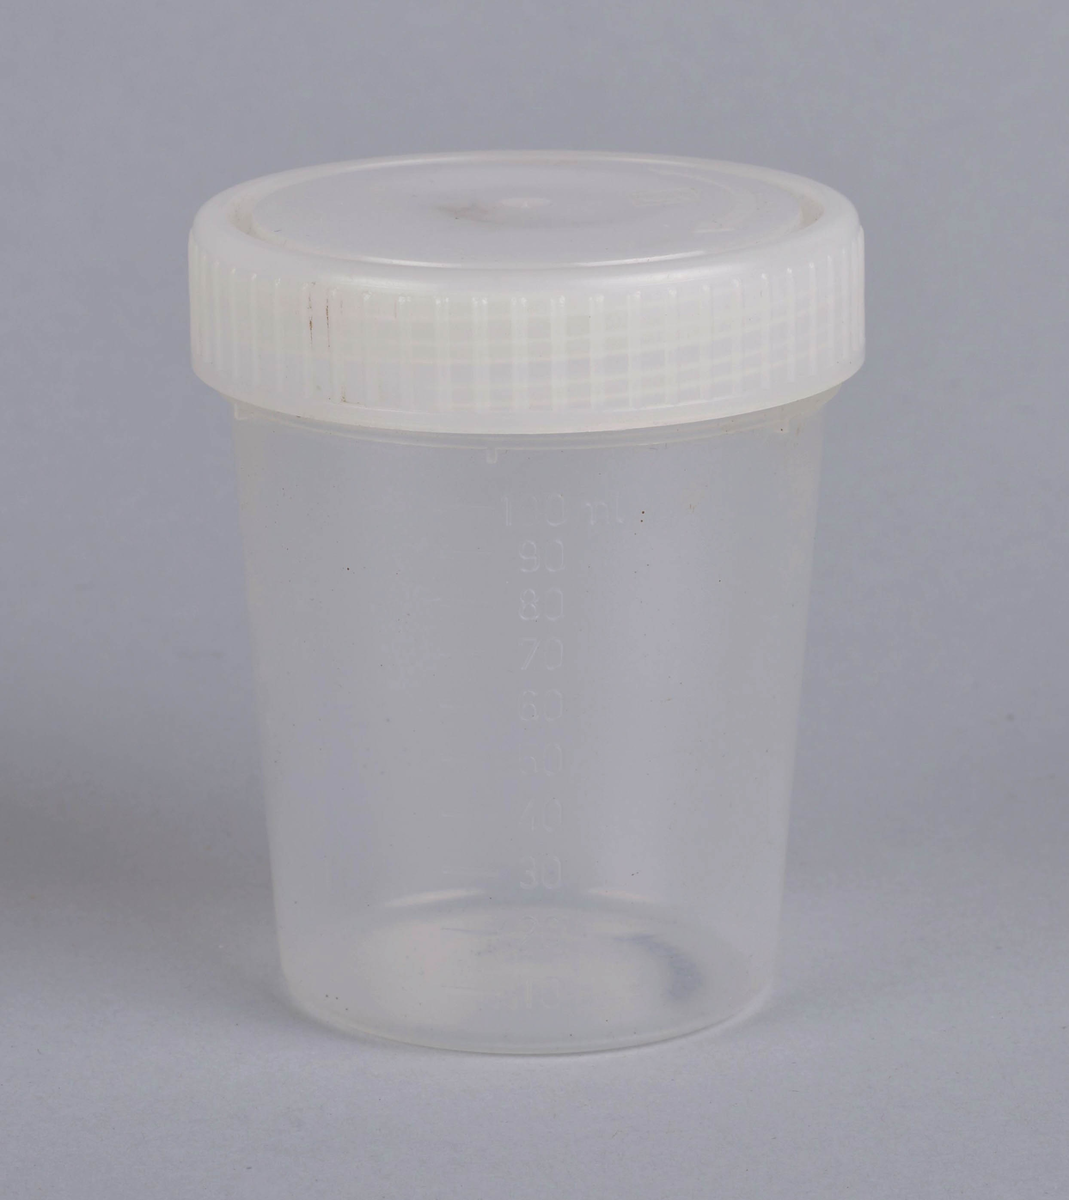 Gjennomsiktig plastkopp med måleskala fra 0 - 100 ml.
Hvitt felt for å skrive på verdier eller innhold (2,5 x 4 cm) midt på koppen.
Trolig brukt for oppmåling av væske eller oppbevaring av lignende.